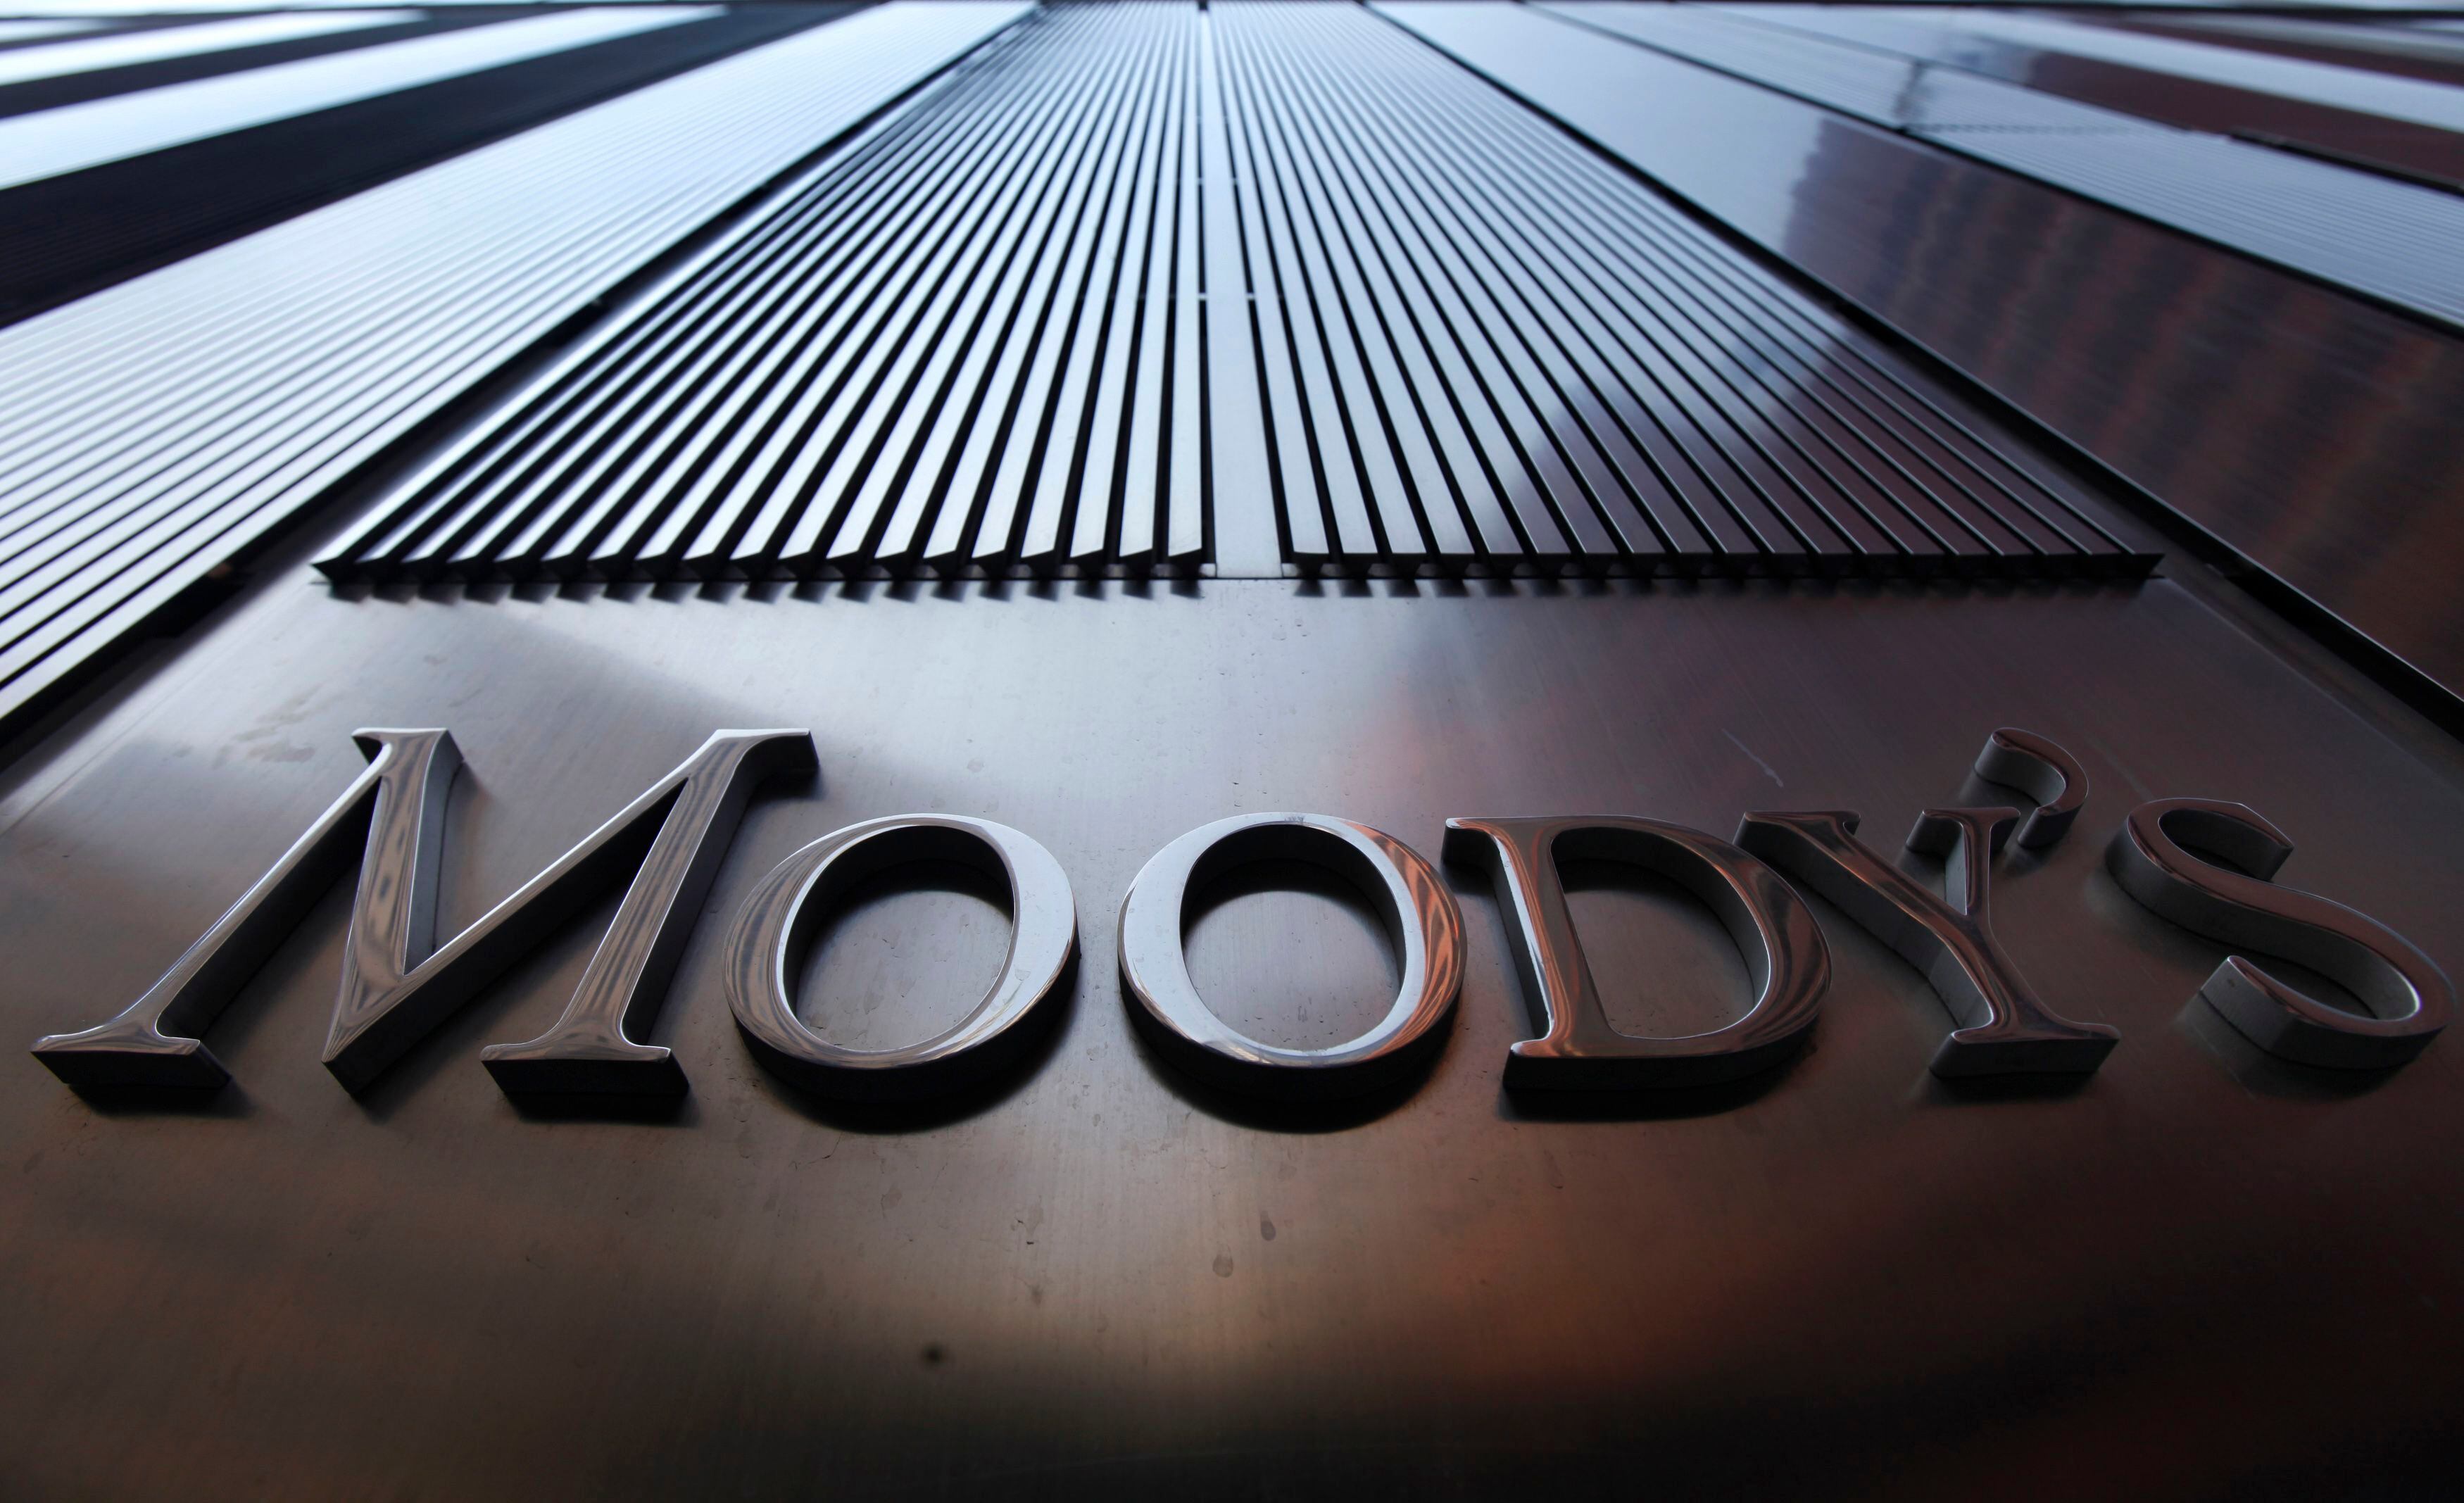 Moody’s completó la adquisición de la Sociedad Calificadora de Riesgo Centroamericana (SCRiesgo) que opera en Centroamérica y Panamá, la que había sido anunciada en diciembre pasado. SCRiesgo opera en Costa Rica desde 1997.